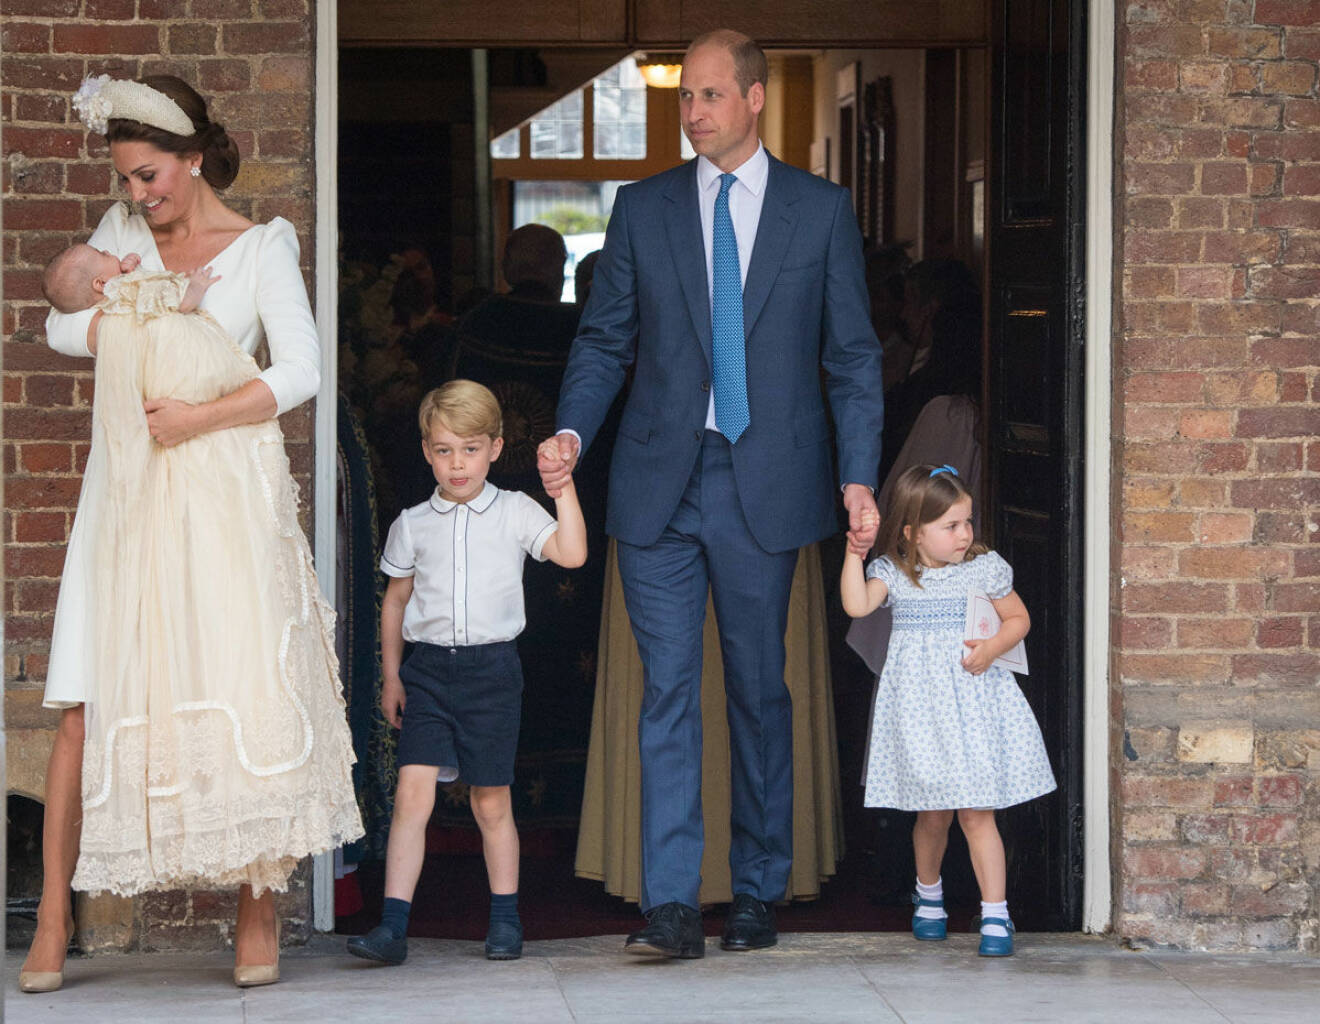 Hertiginnan Catherine, prins Louis, prins William, prins George och prinsessan Charlotte. Hela familjen samlad på en och samma bild för första gången! 